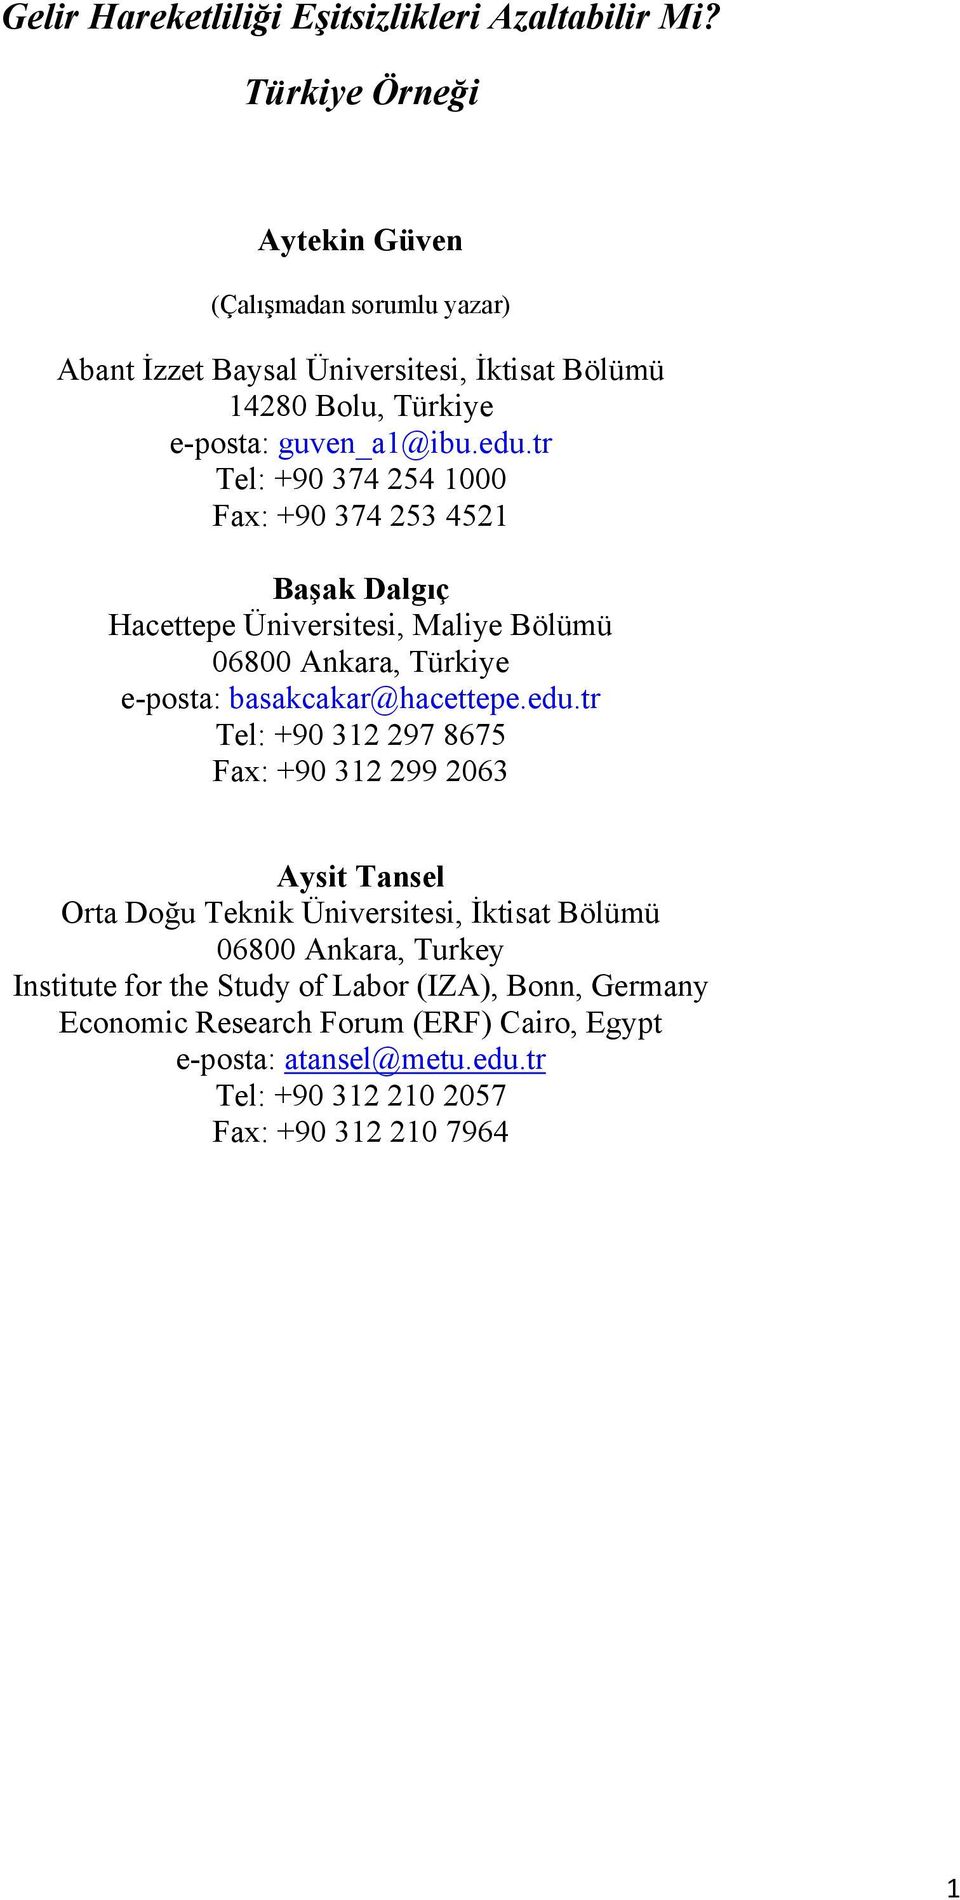 tr Tel: +90 374 254 1000 Fax: +90 374 253 4521 Başak Dalgıç Hacettepe Üniversitesi, Maliye Bölümü 06800 Ankara, Türkiye e-posta: basakcakar@hacettepe.edu.